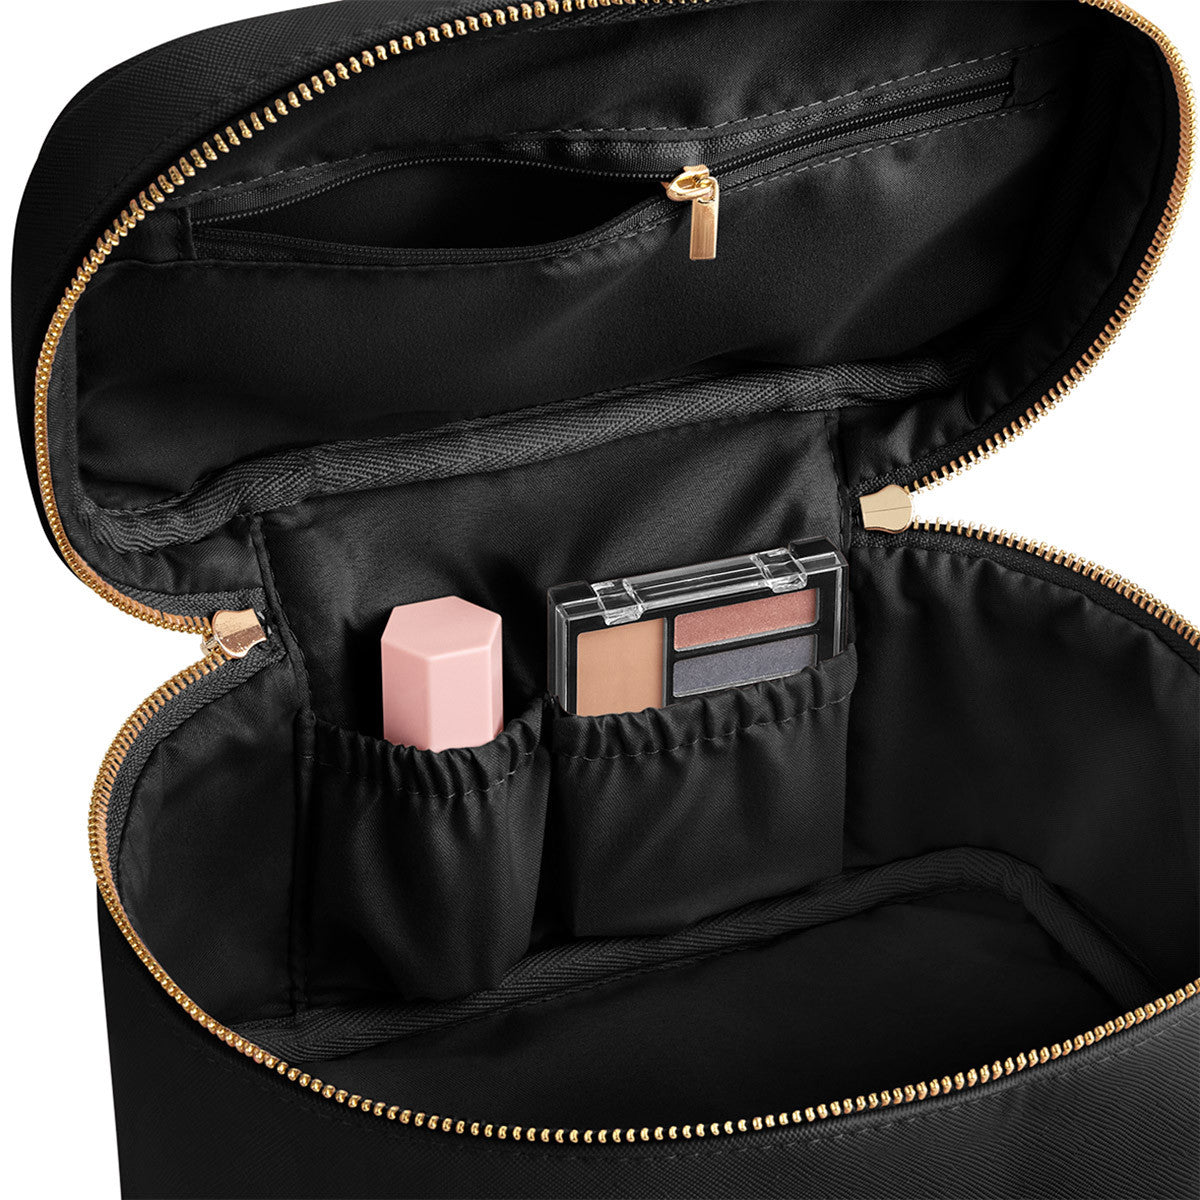 Beauty Kosmetiktasche Koffer Case freie Frabwahl